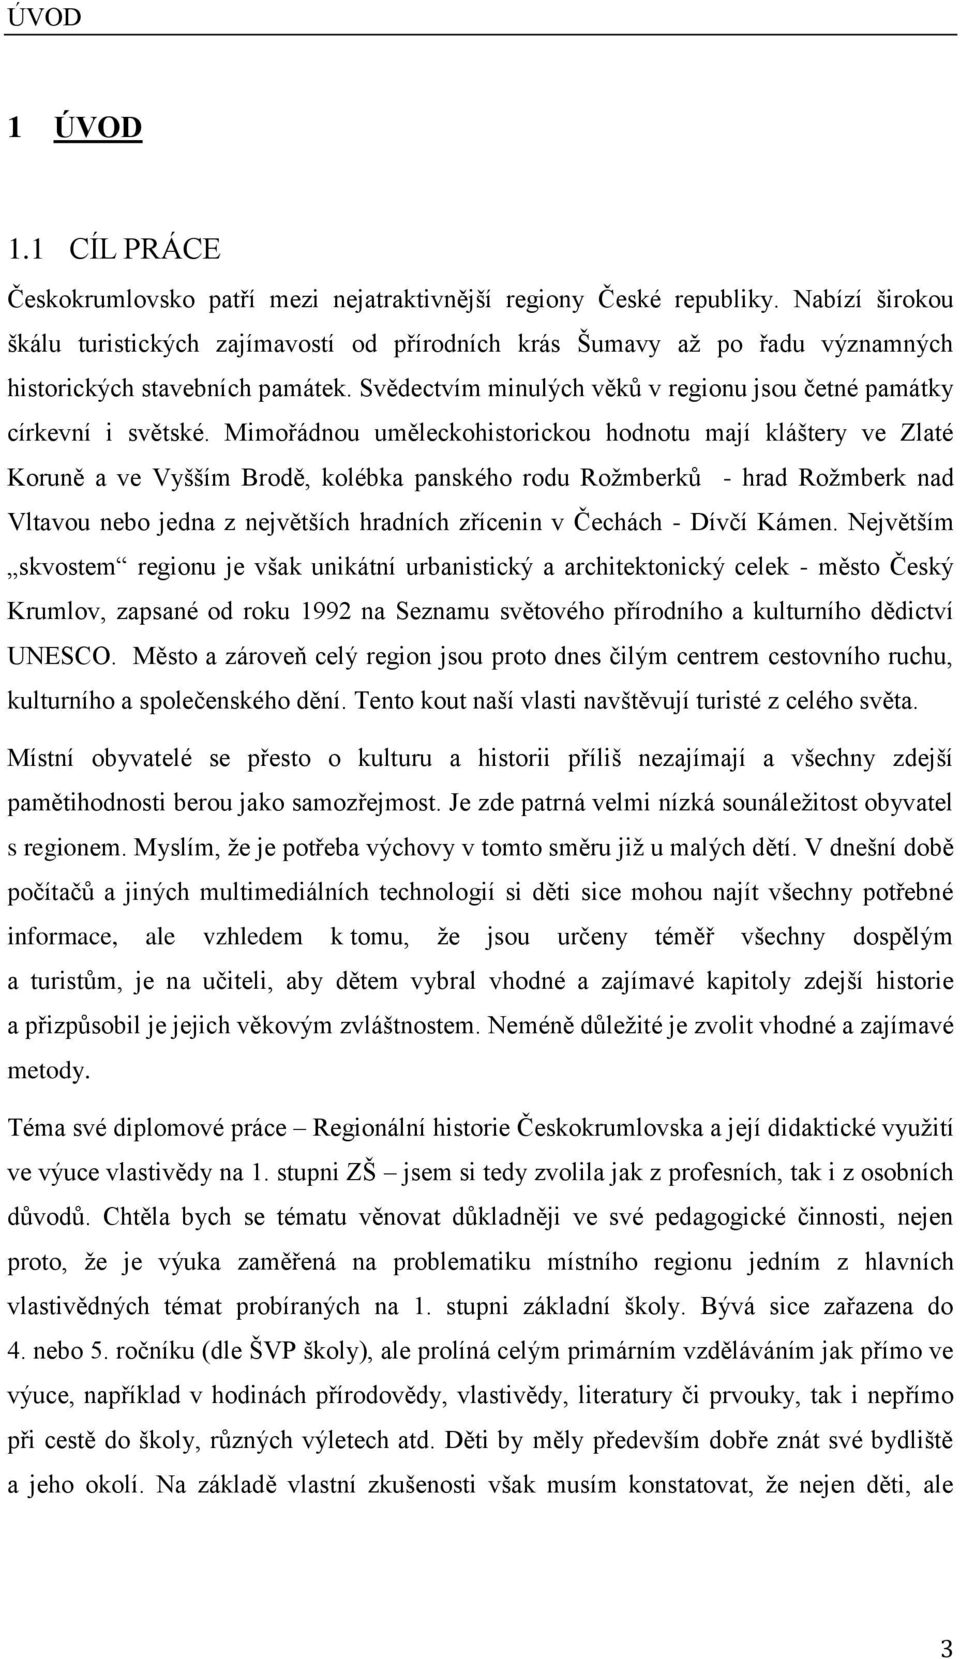 Západočeská univerzita v Plzni - PDF Stažení zdarma